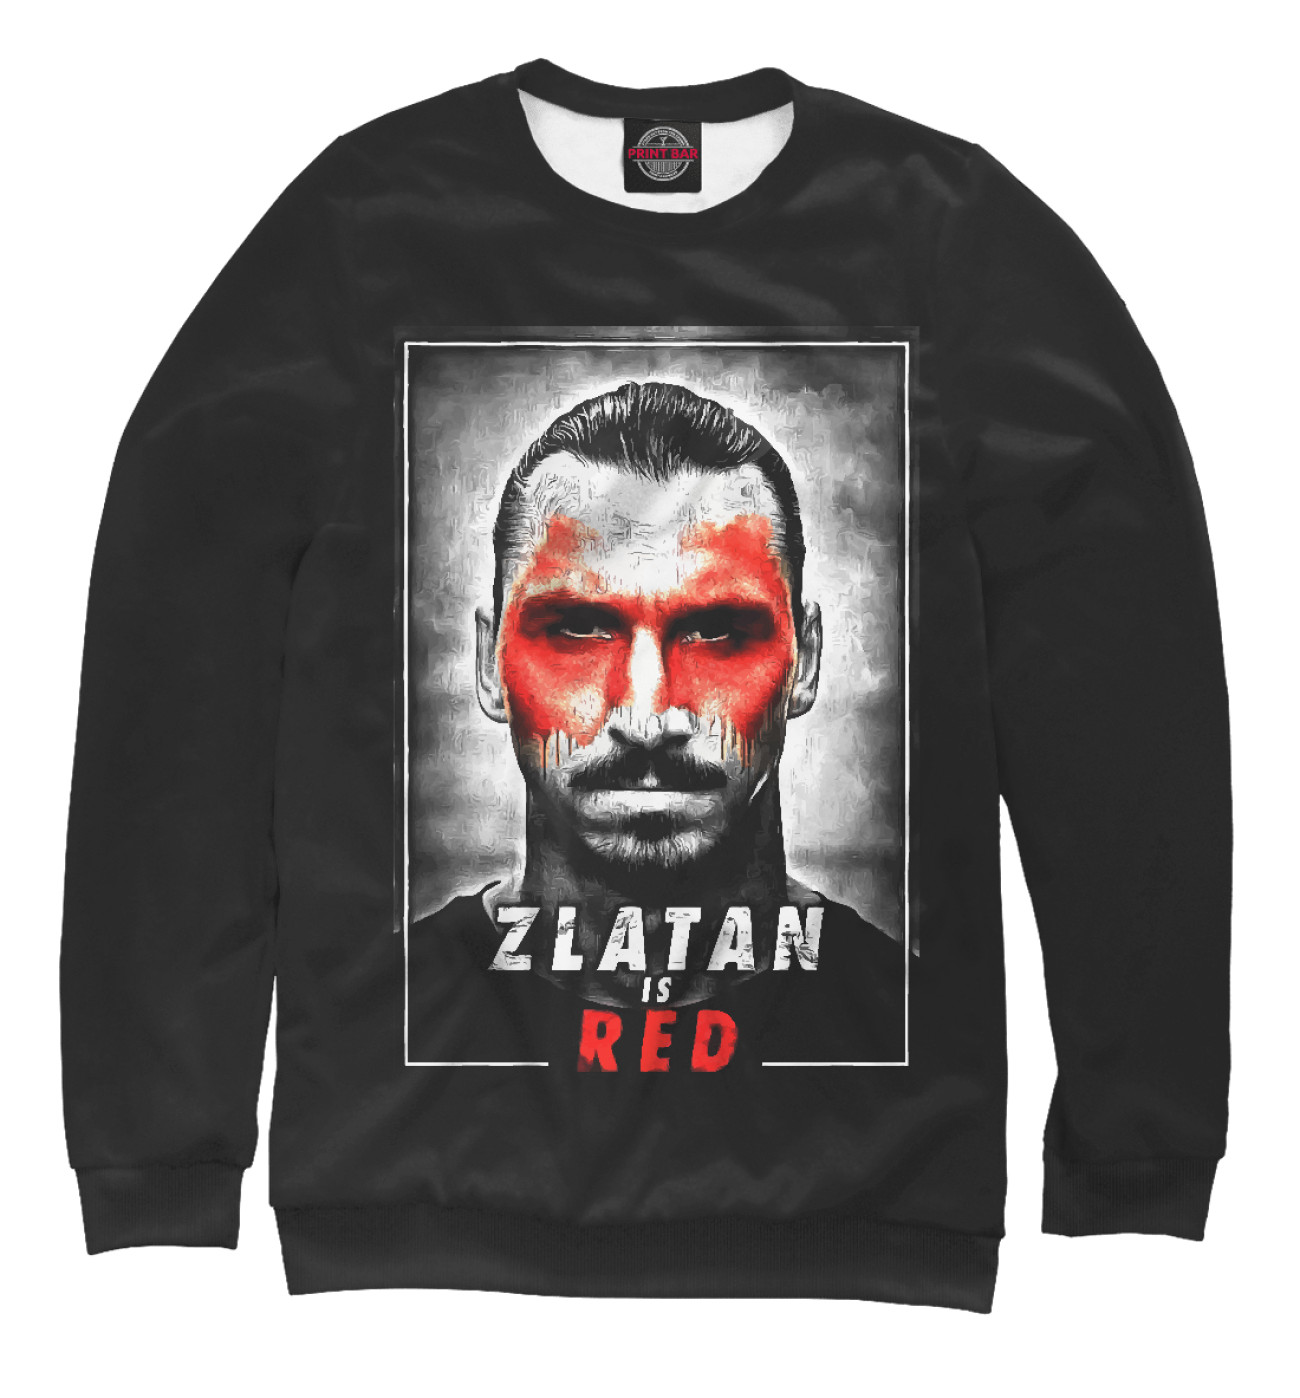 Мужской Свитшот Zlatan is Red, артикул: MAN-840663-swi-2